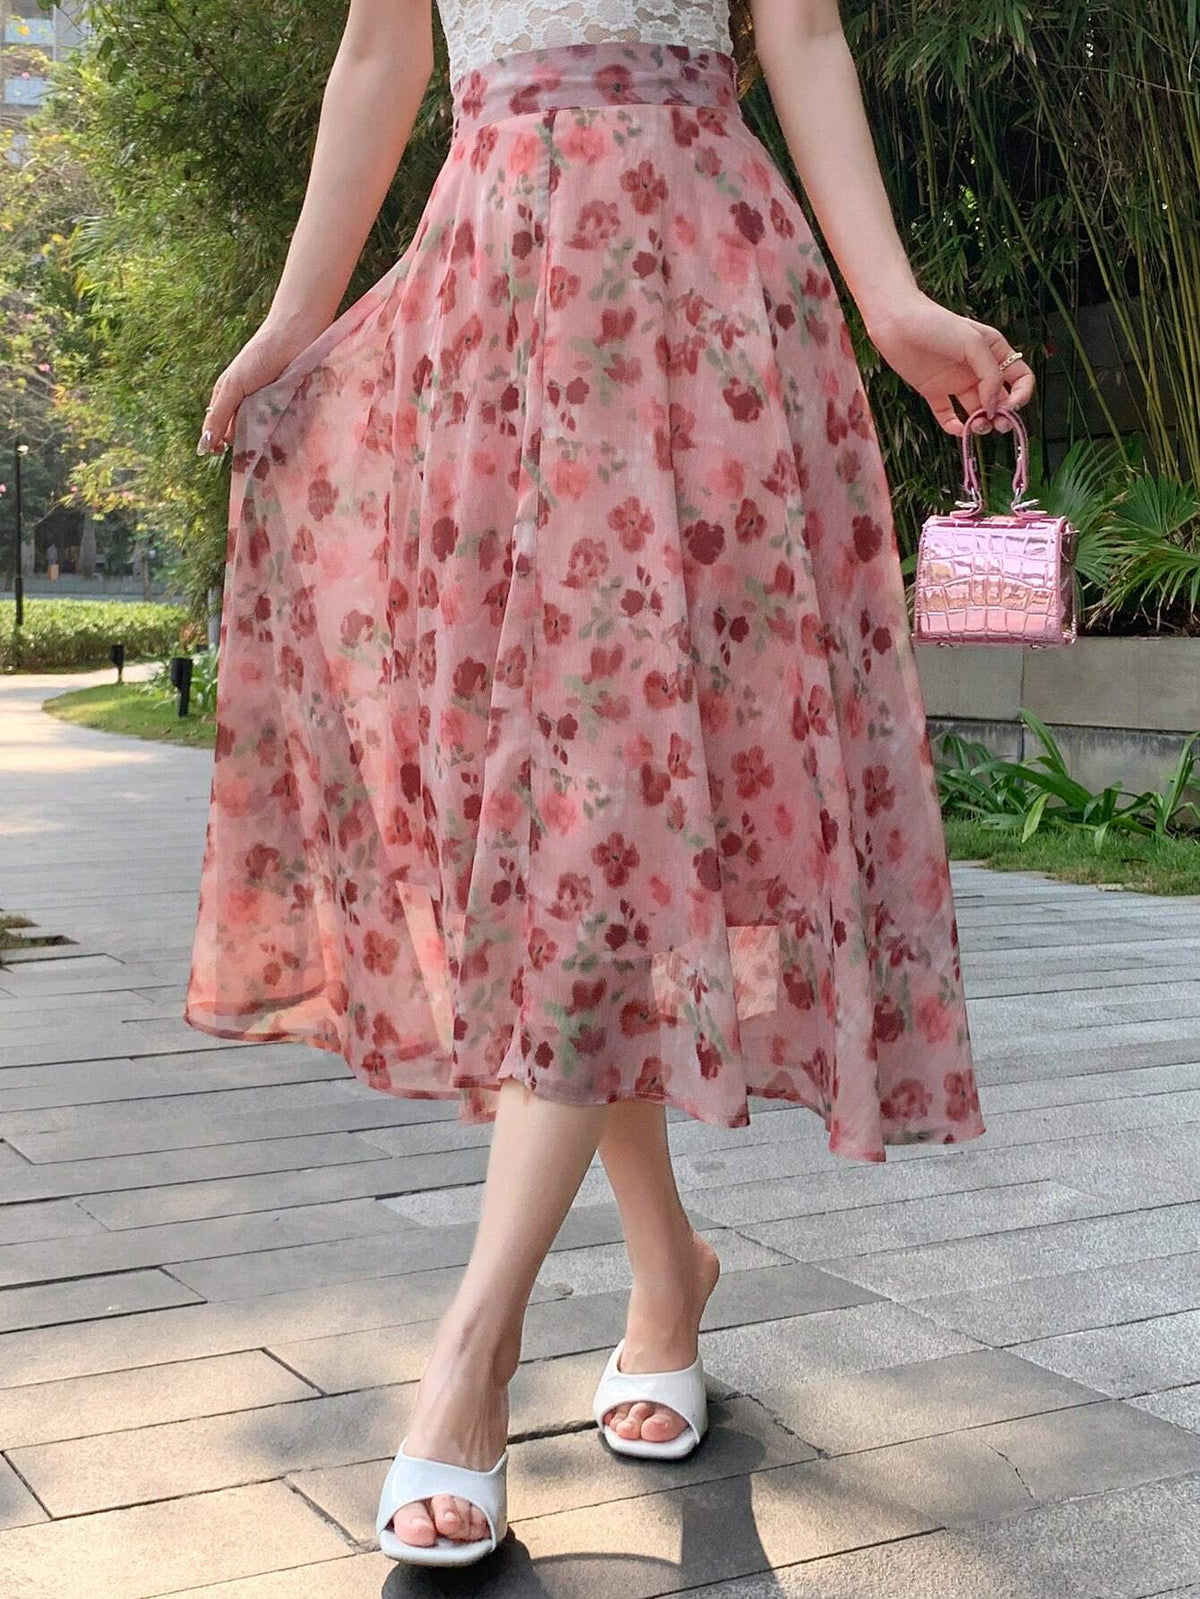 DAZY Women Irregular Floral Chiffon Skirt Mid-Length High Waist A-Line Skirt